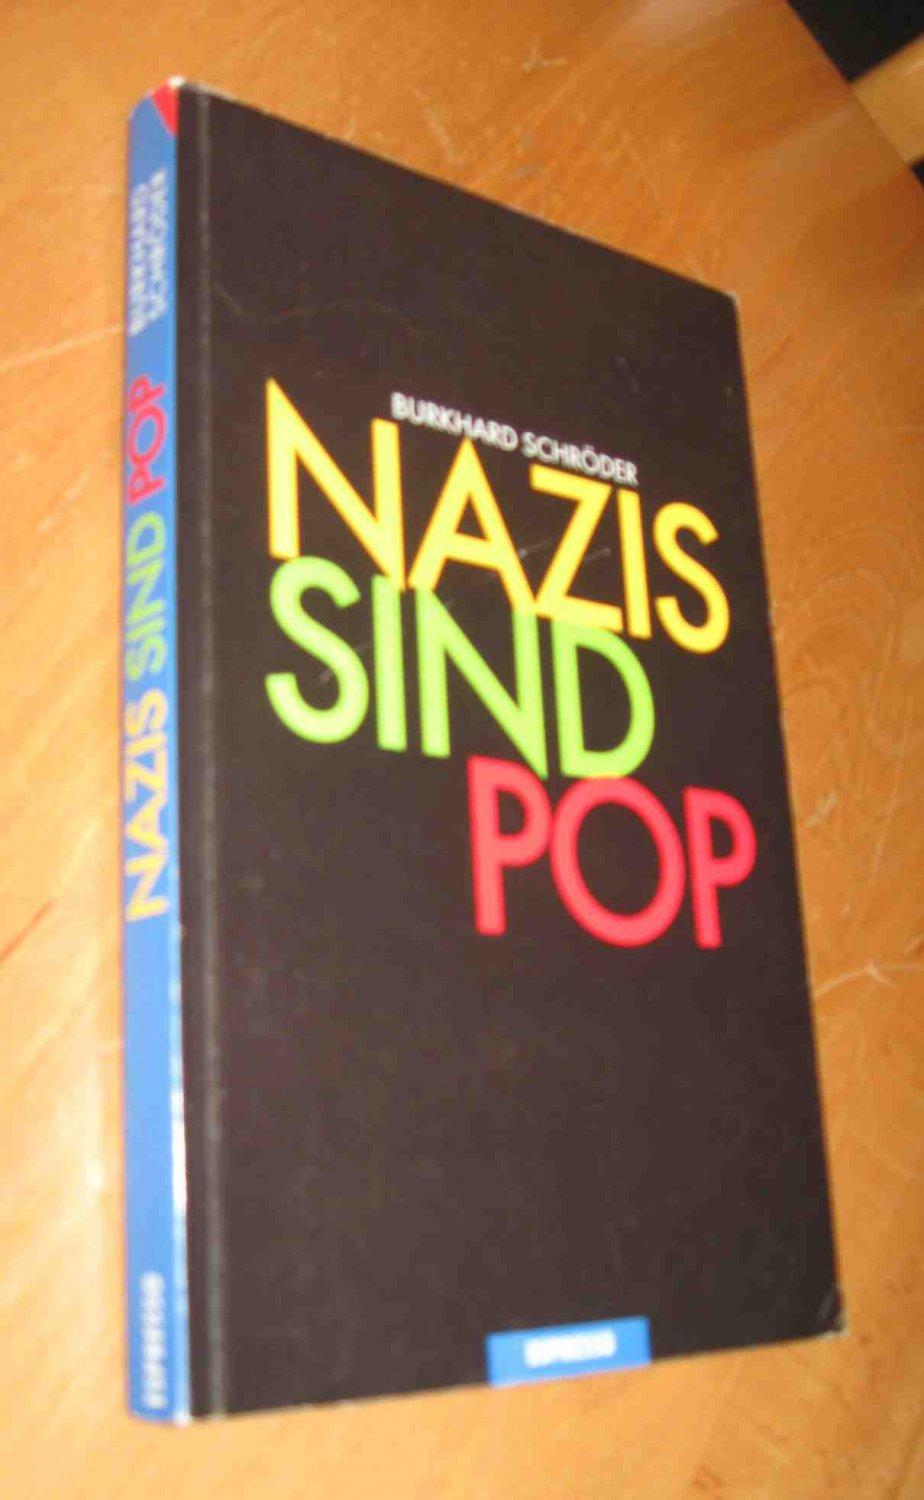 Nazis sind pop - Burkhard Schörder